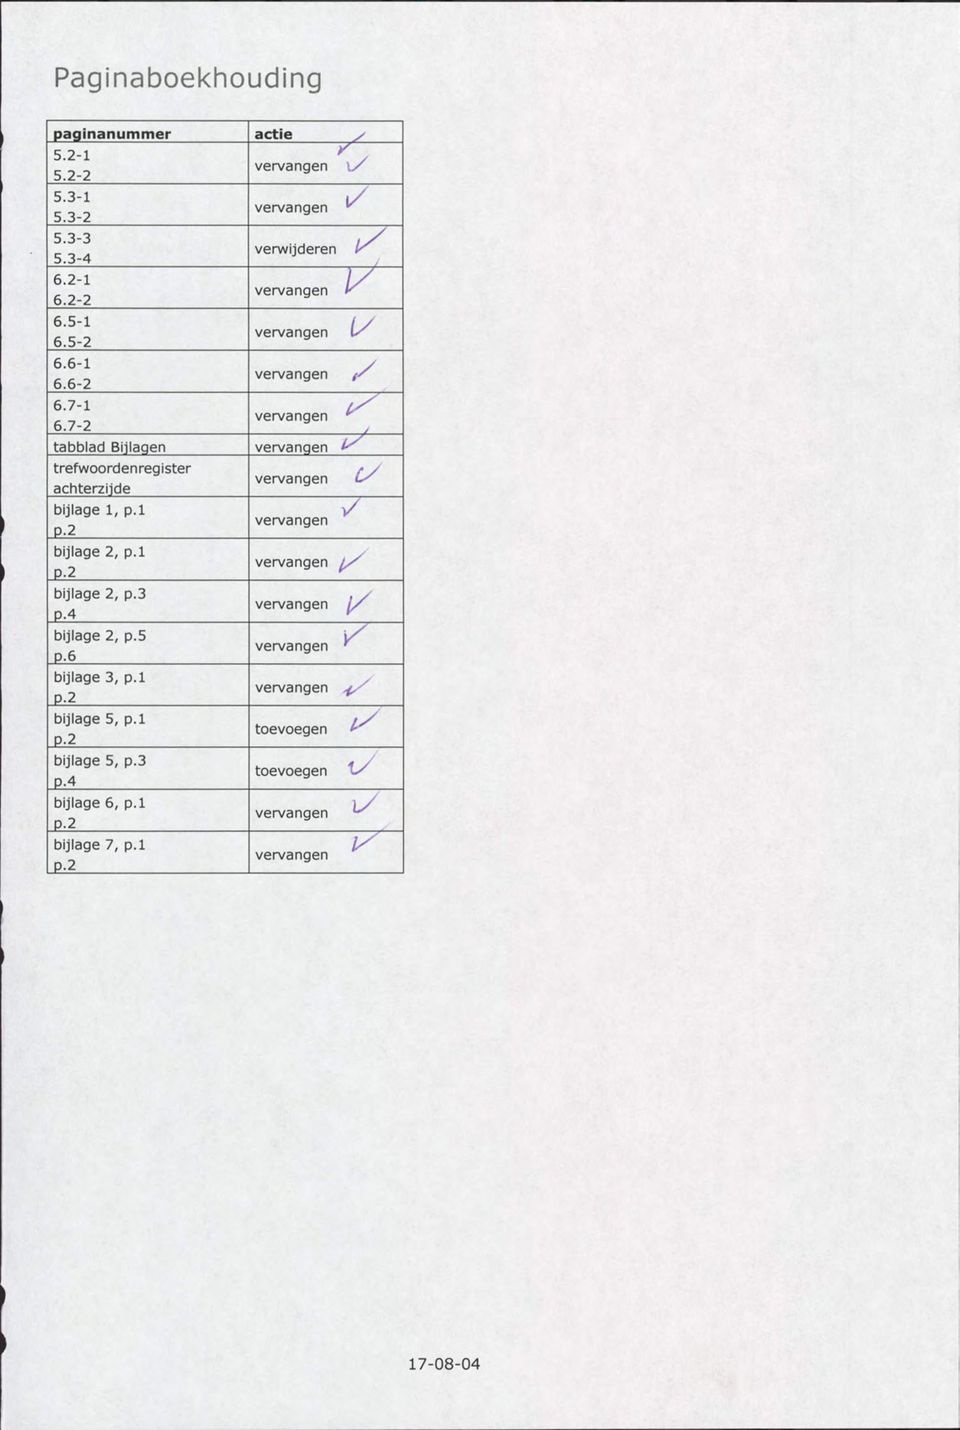 7-2 tabblad Bijlagen vervangen ^ trefwoordenregister vervangen achterzijde bijlage 1, p.l P.2 vervangen bijlage 2, p.l vervangen P.